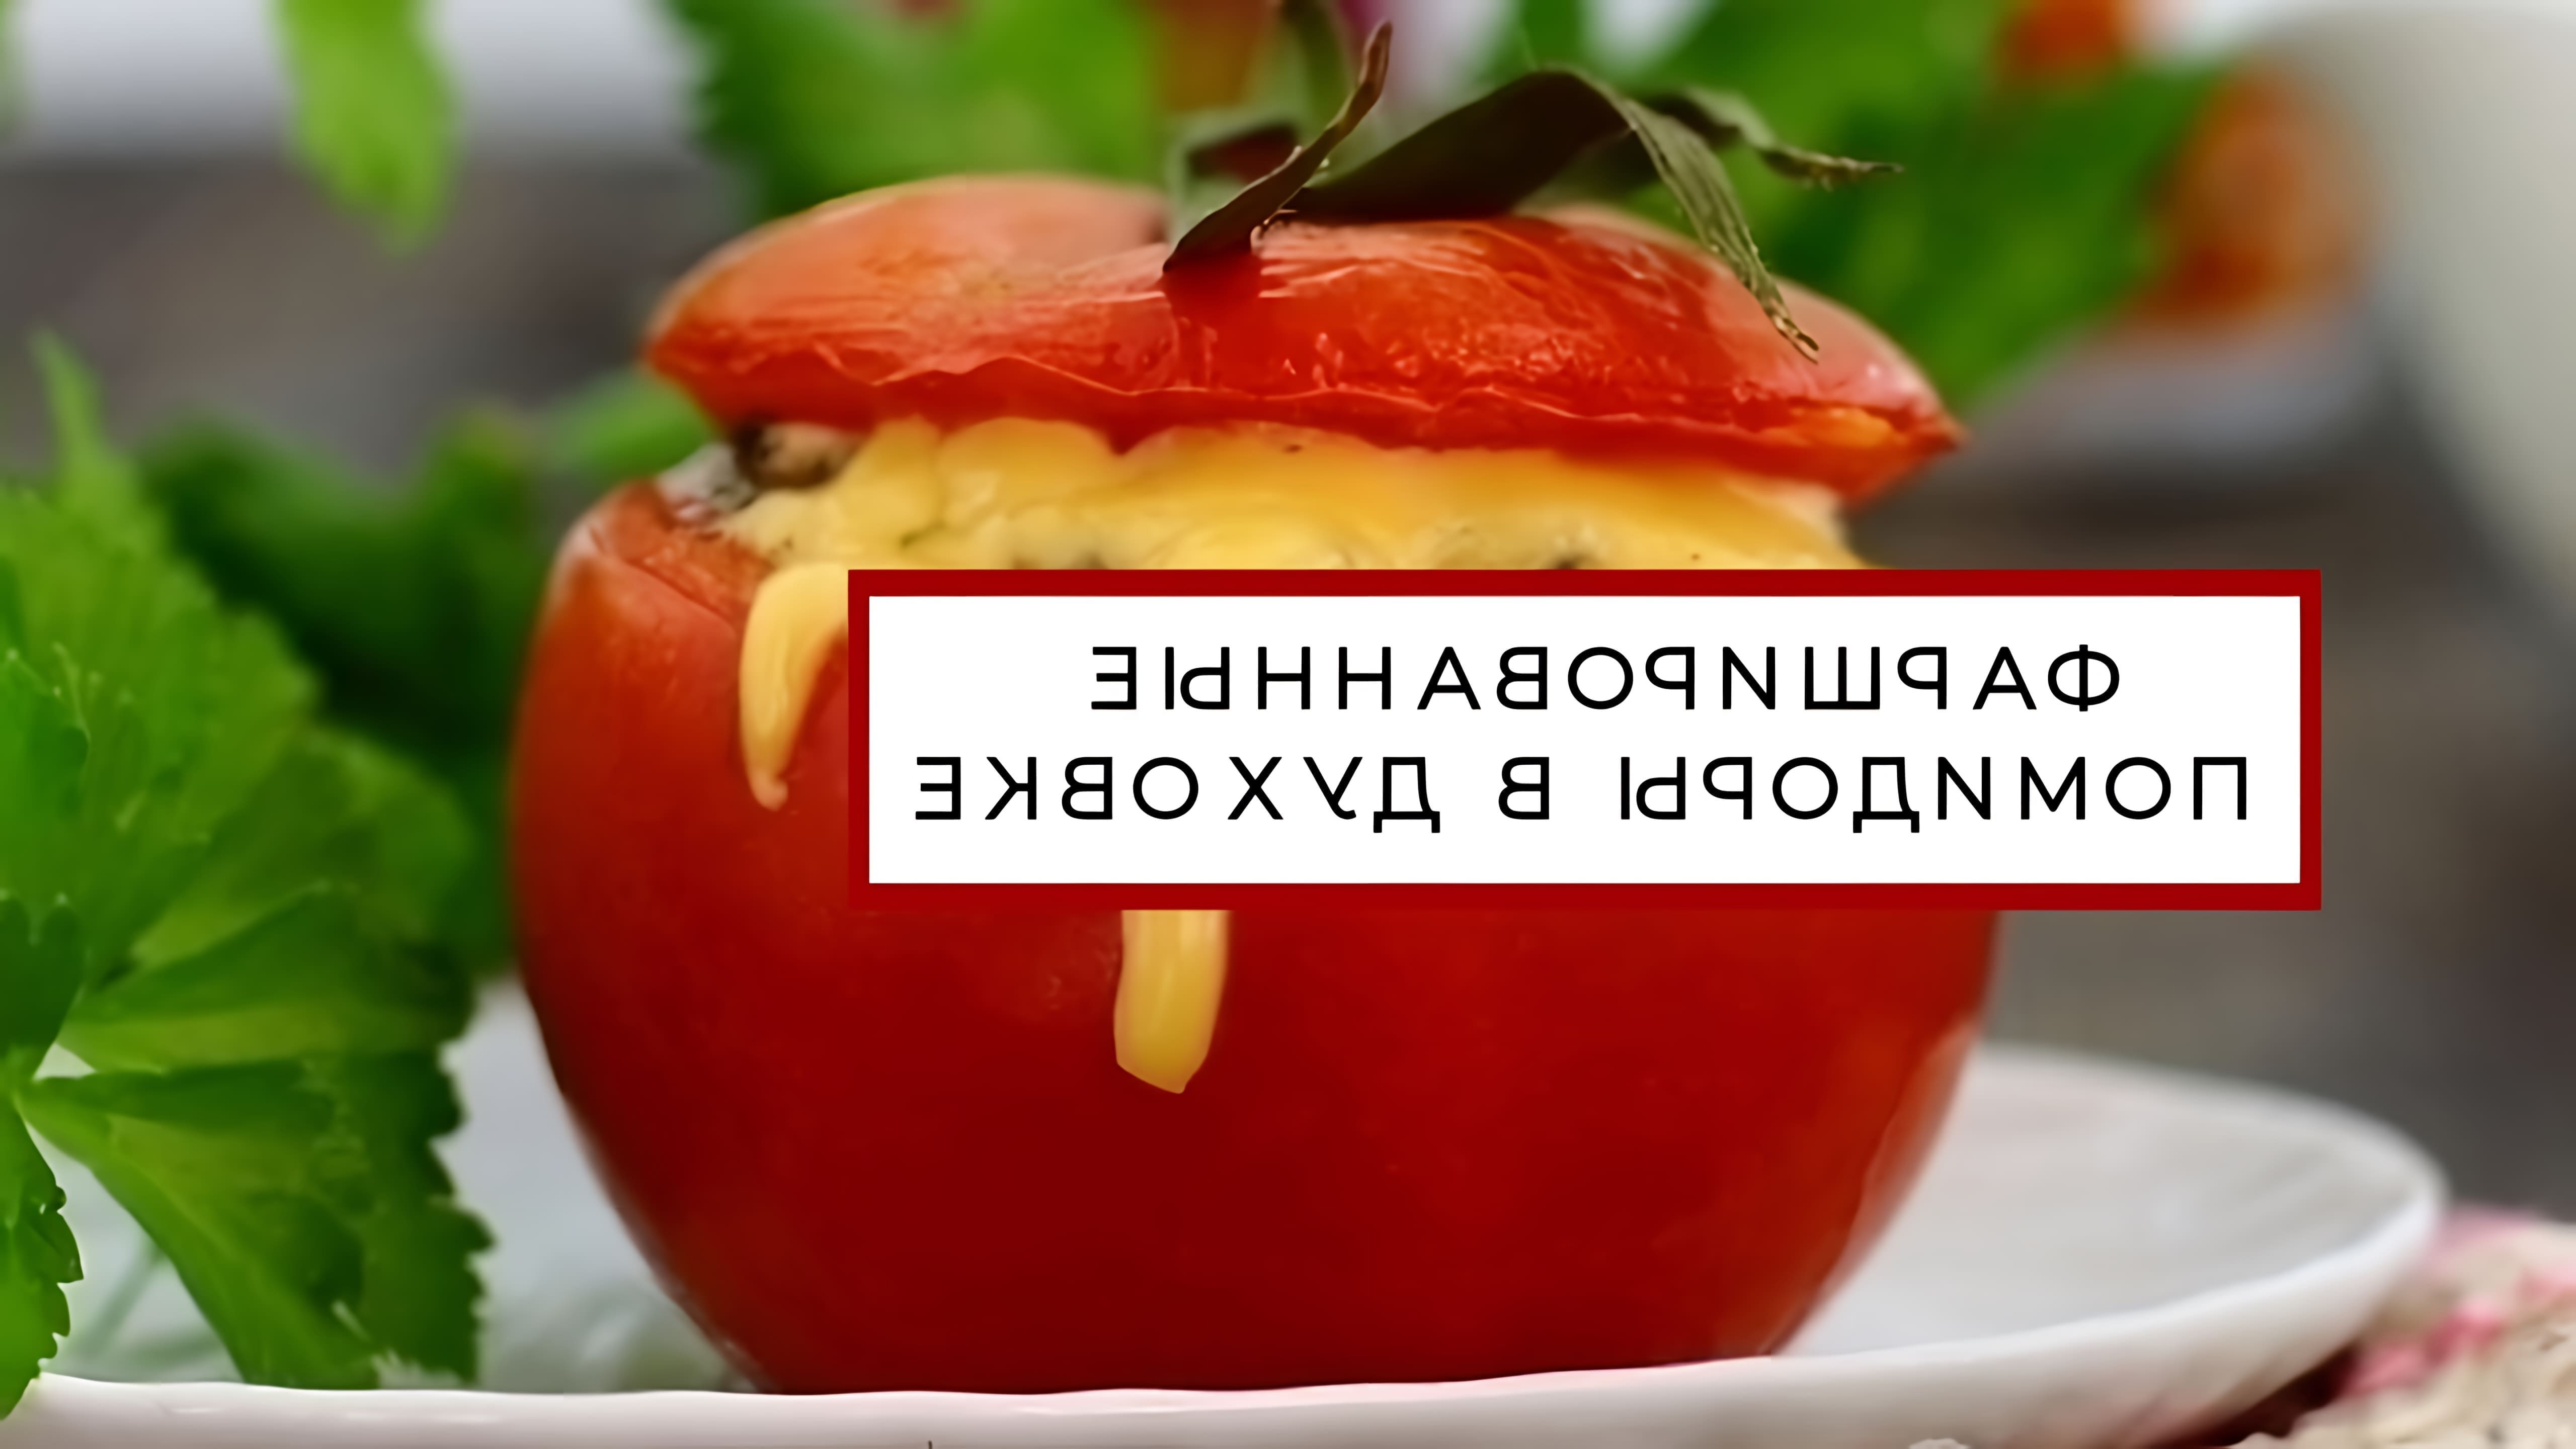 В этом видео-ролике показан процесс приготовления помидоров, фаршированных сыром и запеченных в духовке